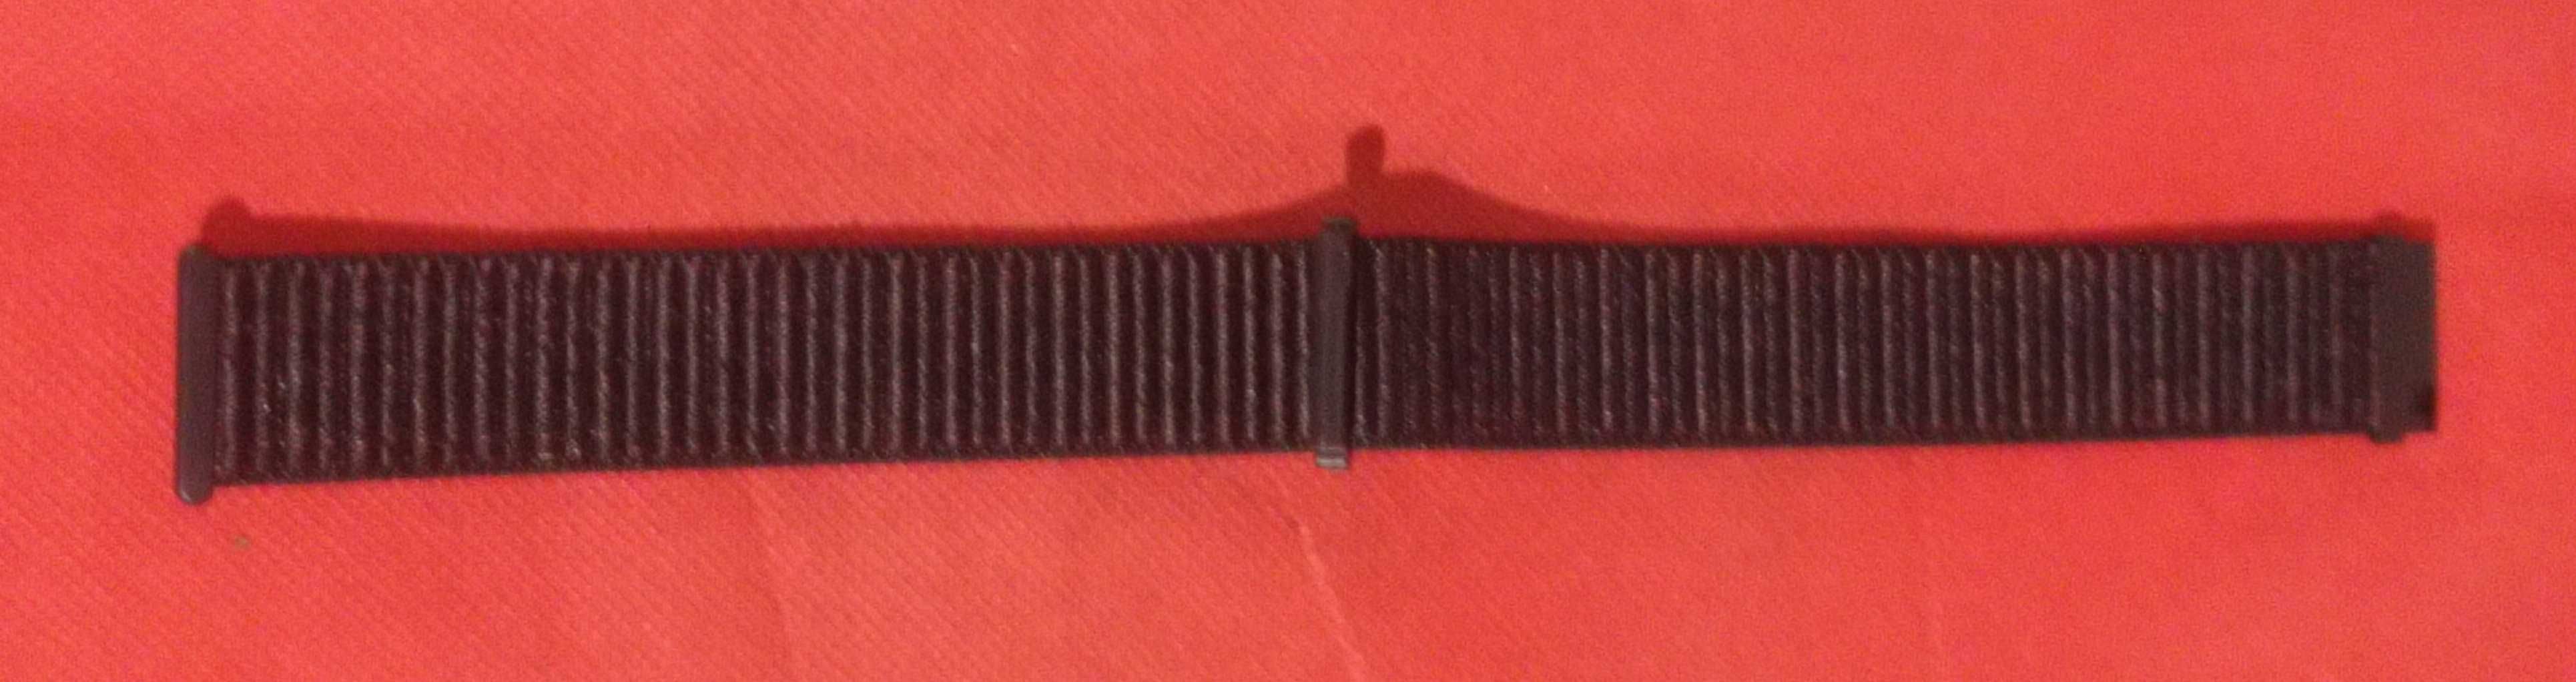 Bracelete para relógio em Nylon nova Black and Red 22 mm